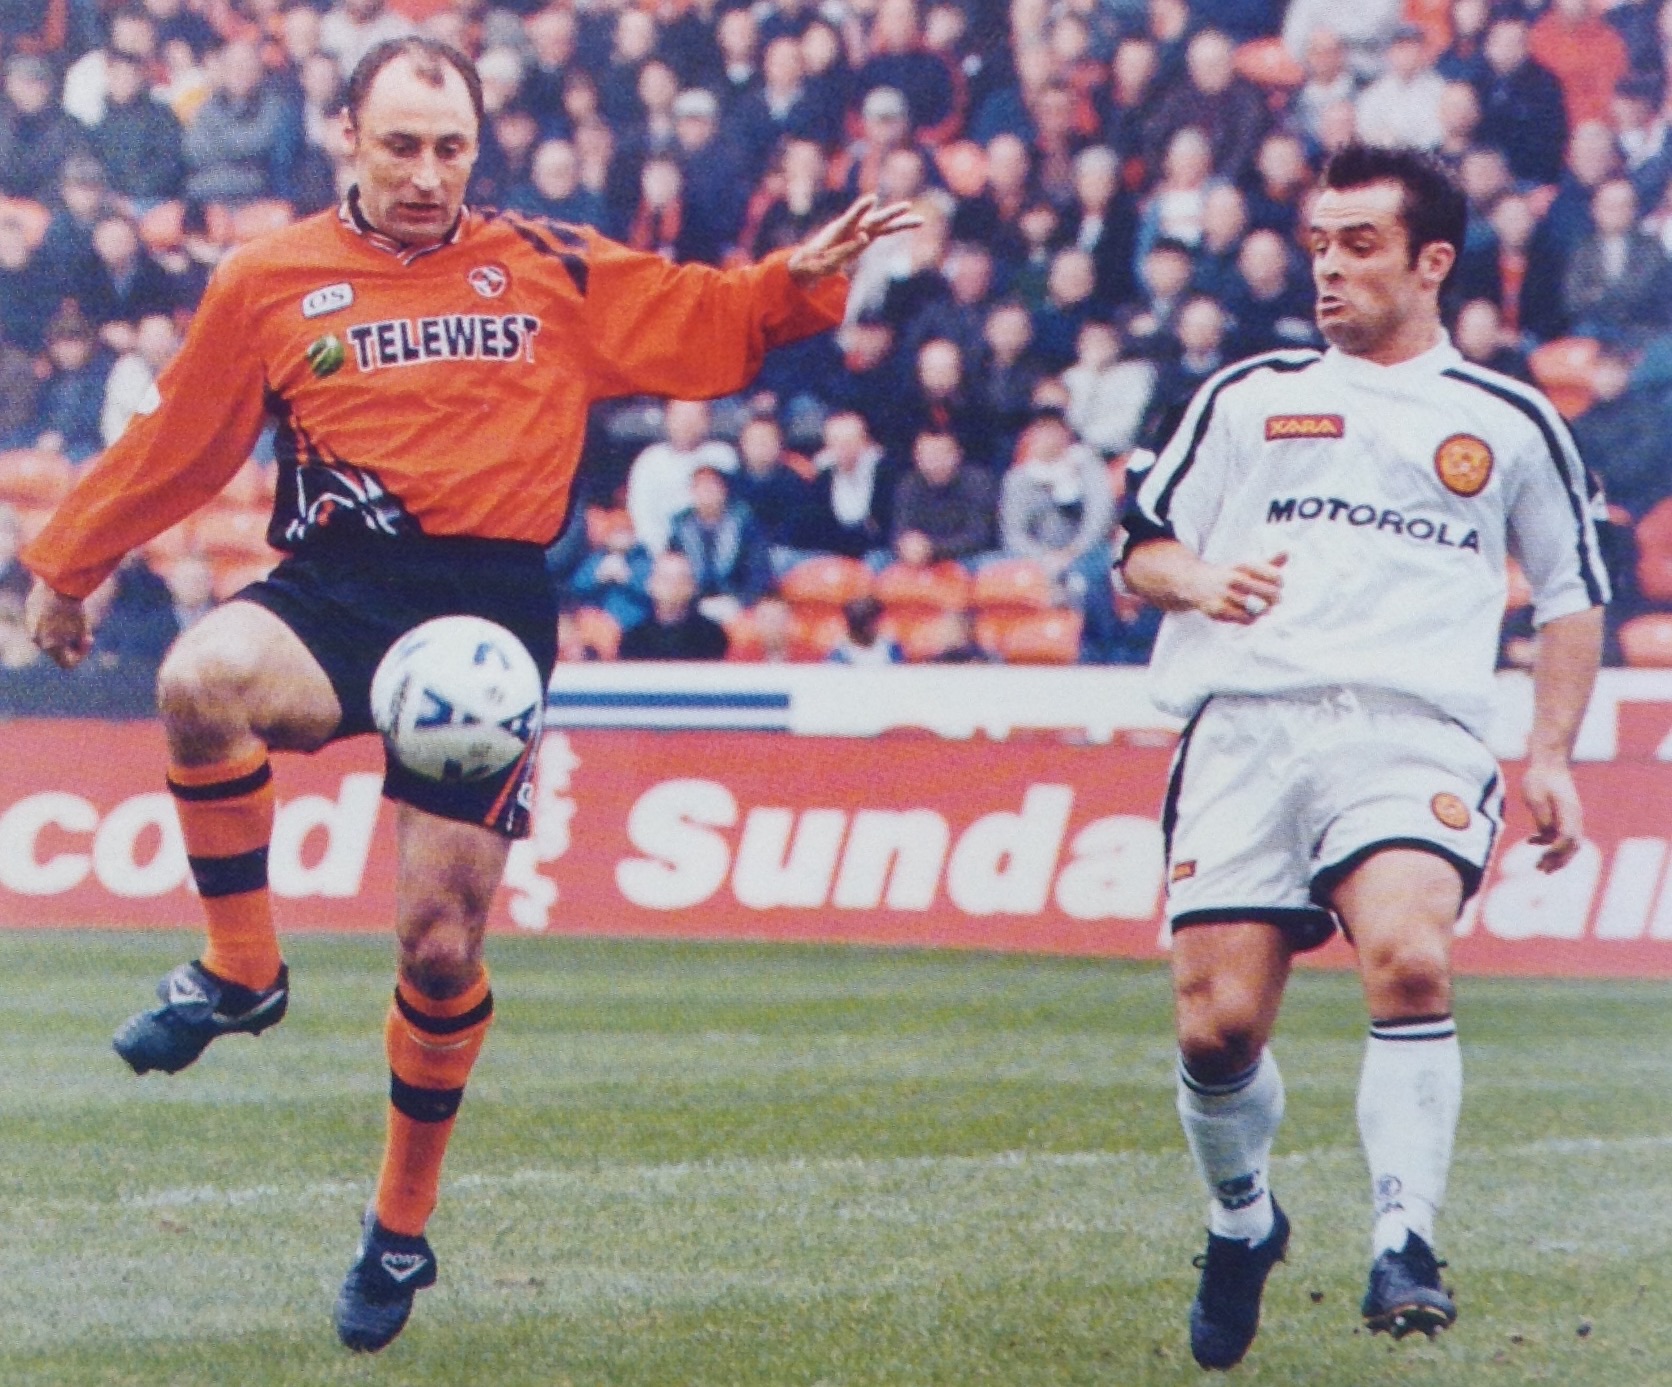 Dundee United's veteran defender Malpas clears the danger as John Spencer looks on.